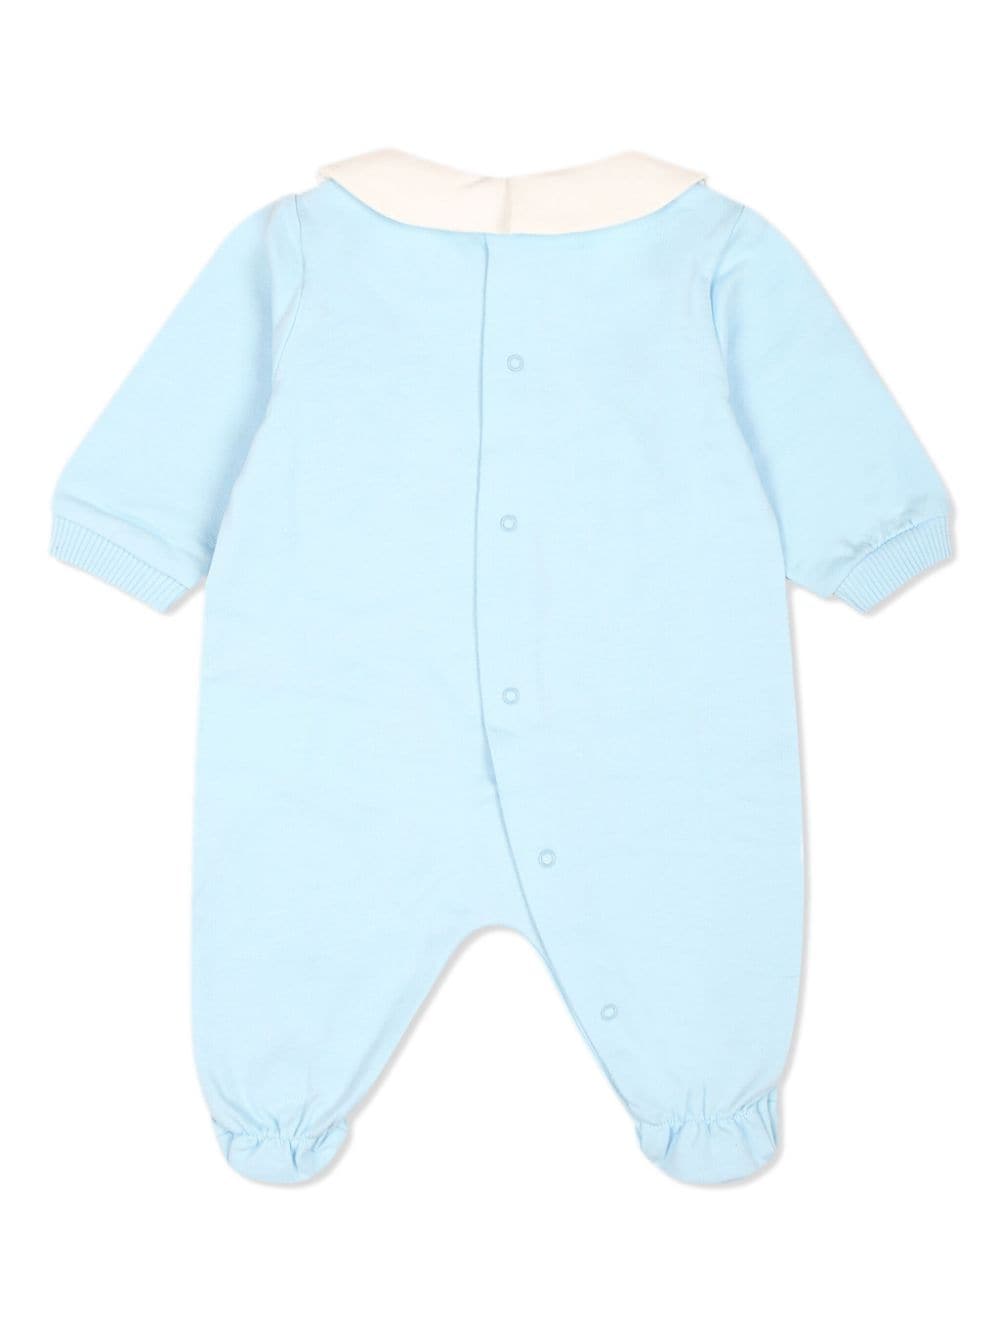 Baby blue cotton onesie